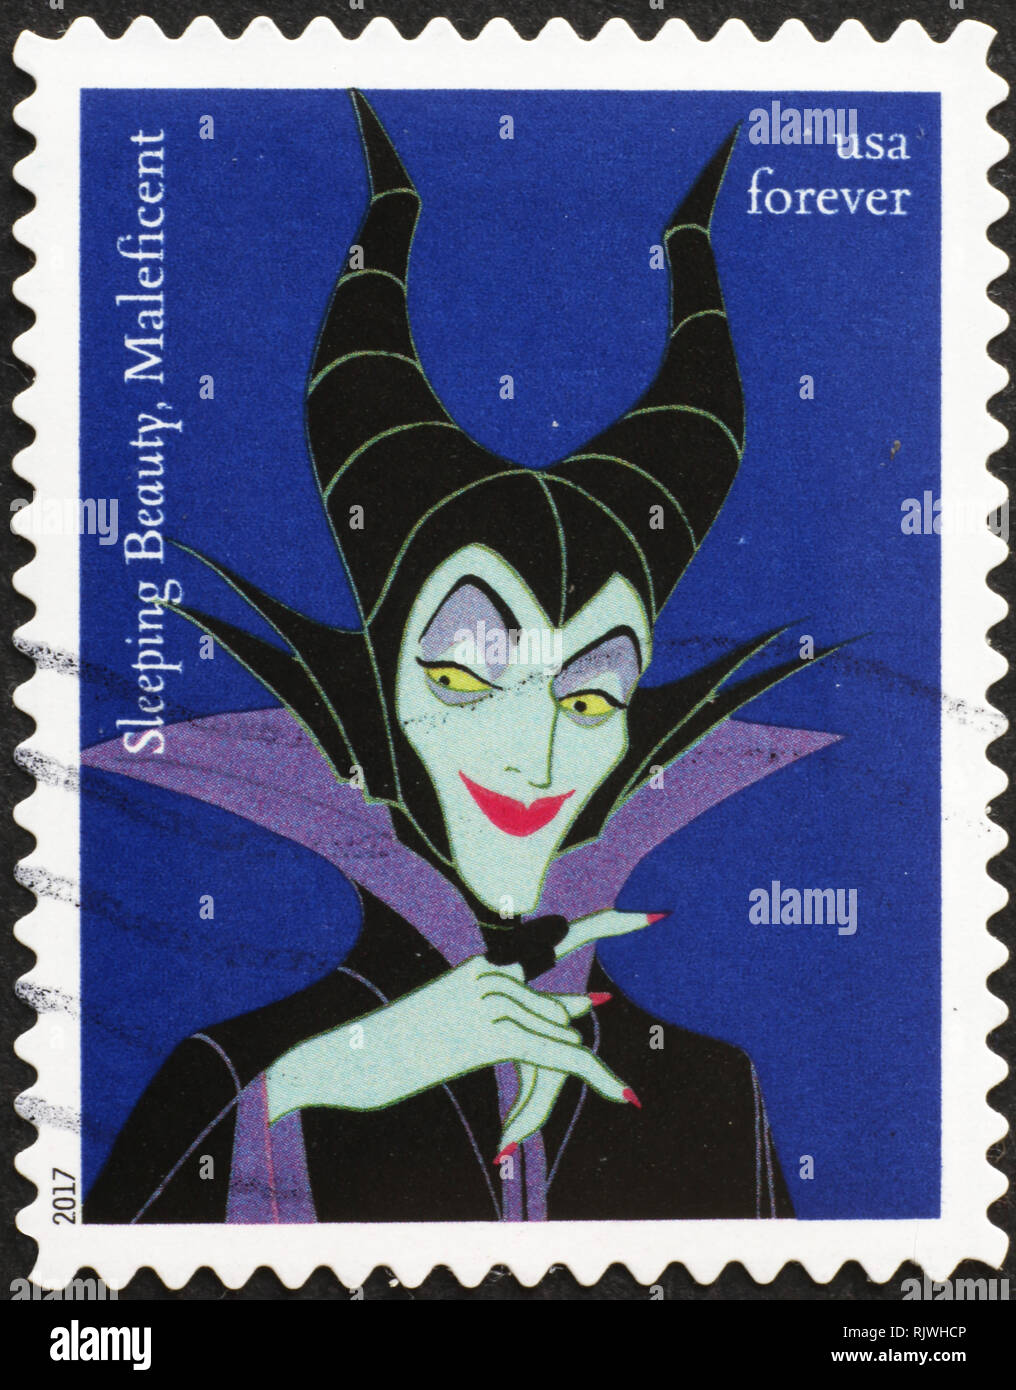 Strega Maleficent da Sleeping Beauty sul timbro americano Foto Stock